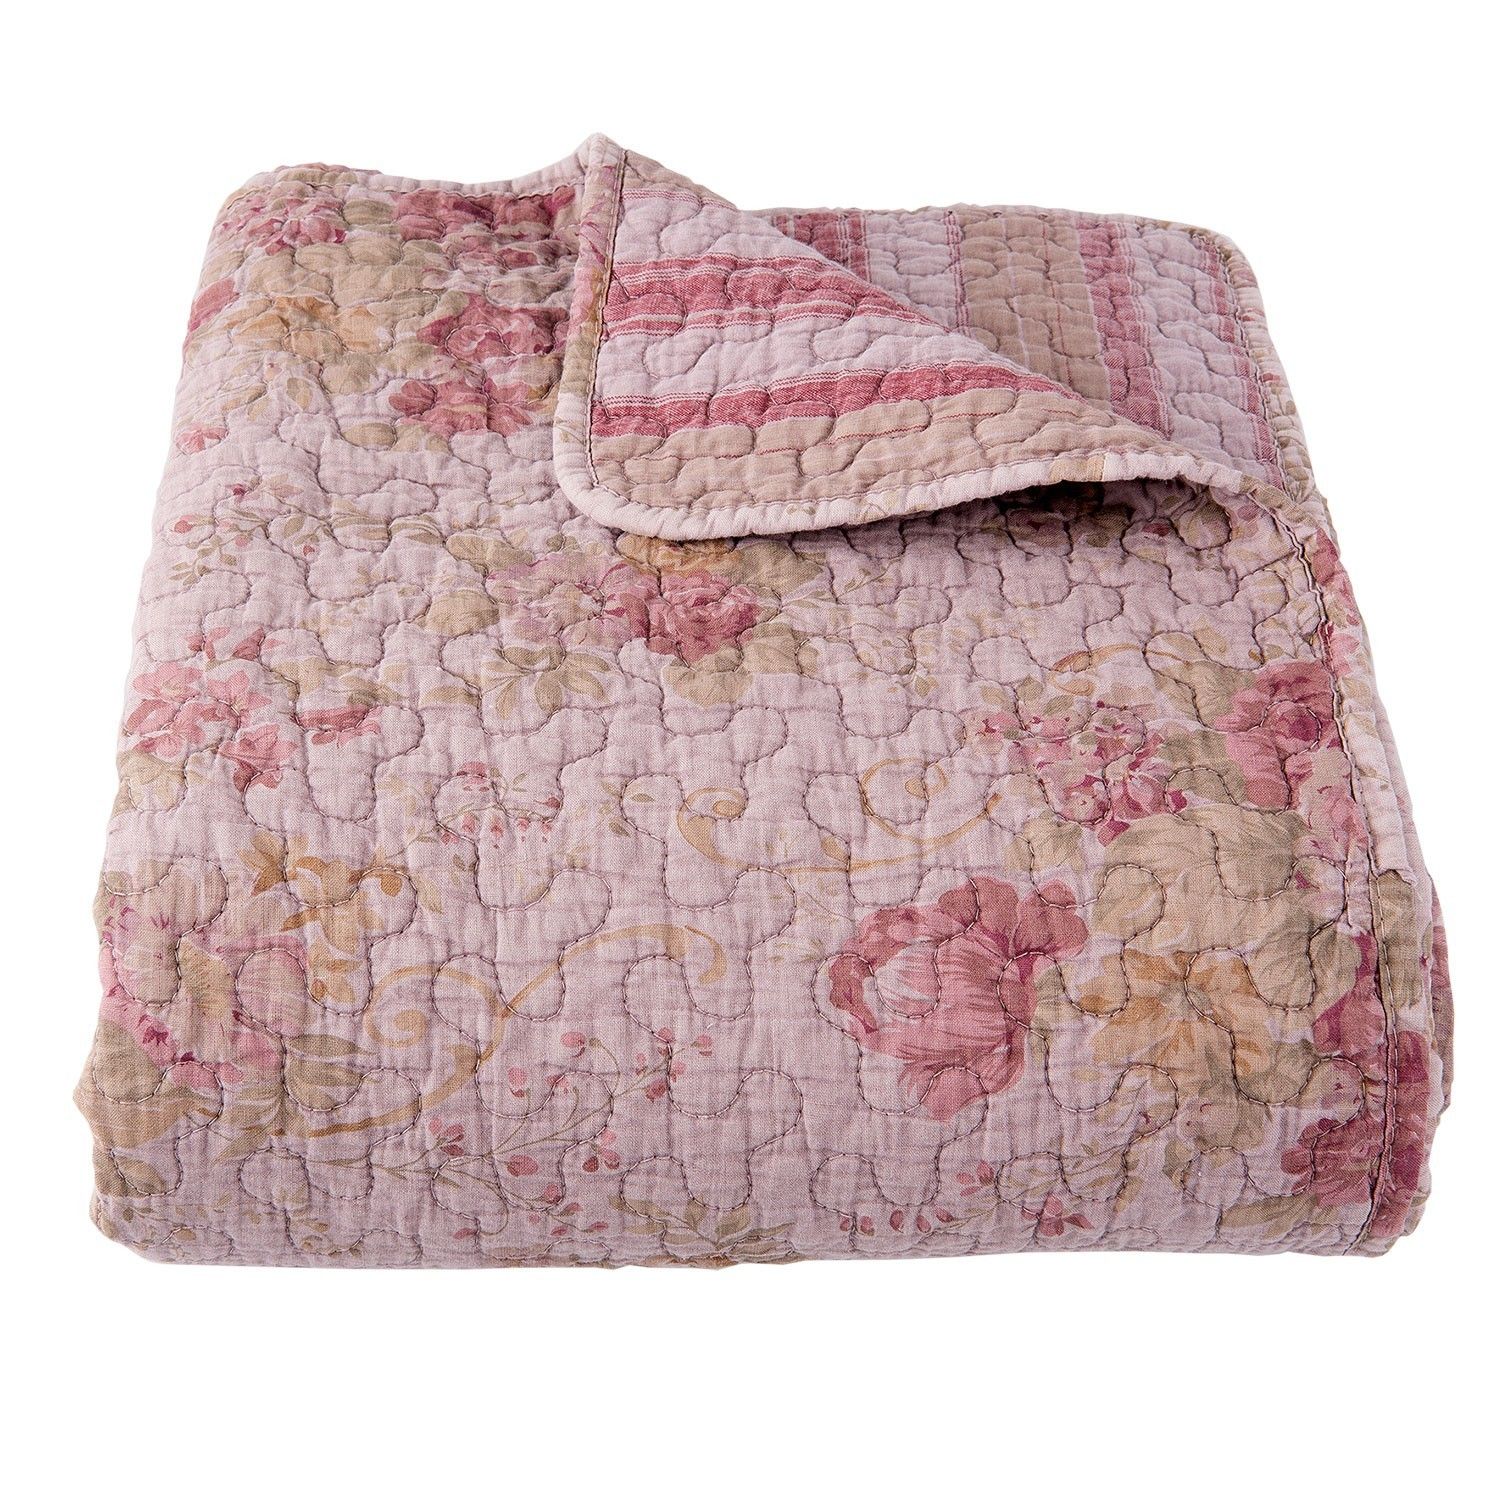 Vintage přehoz na dvoulůžkové postele Quilt 182 pink - 230*260cm - LaHome - vintage dekorace